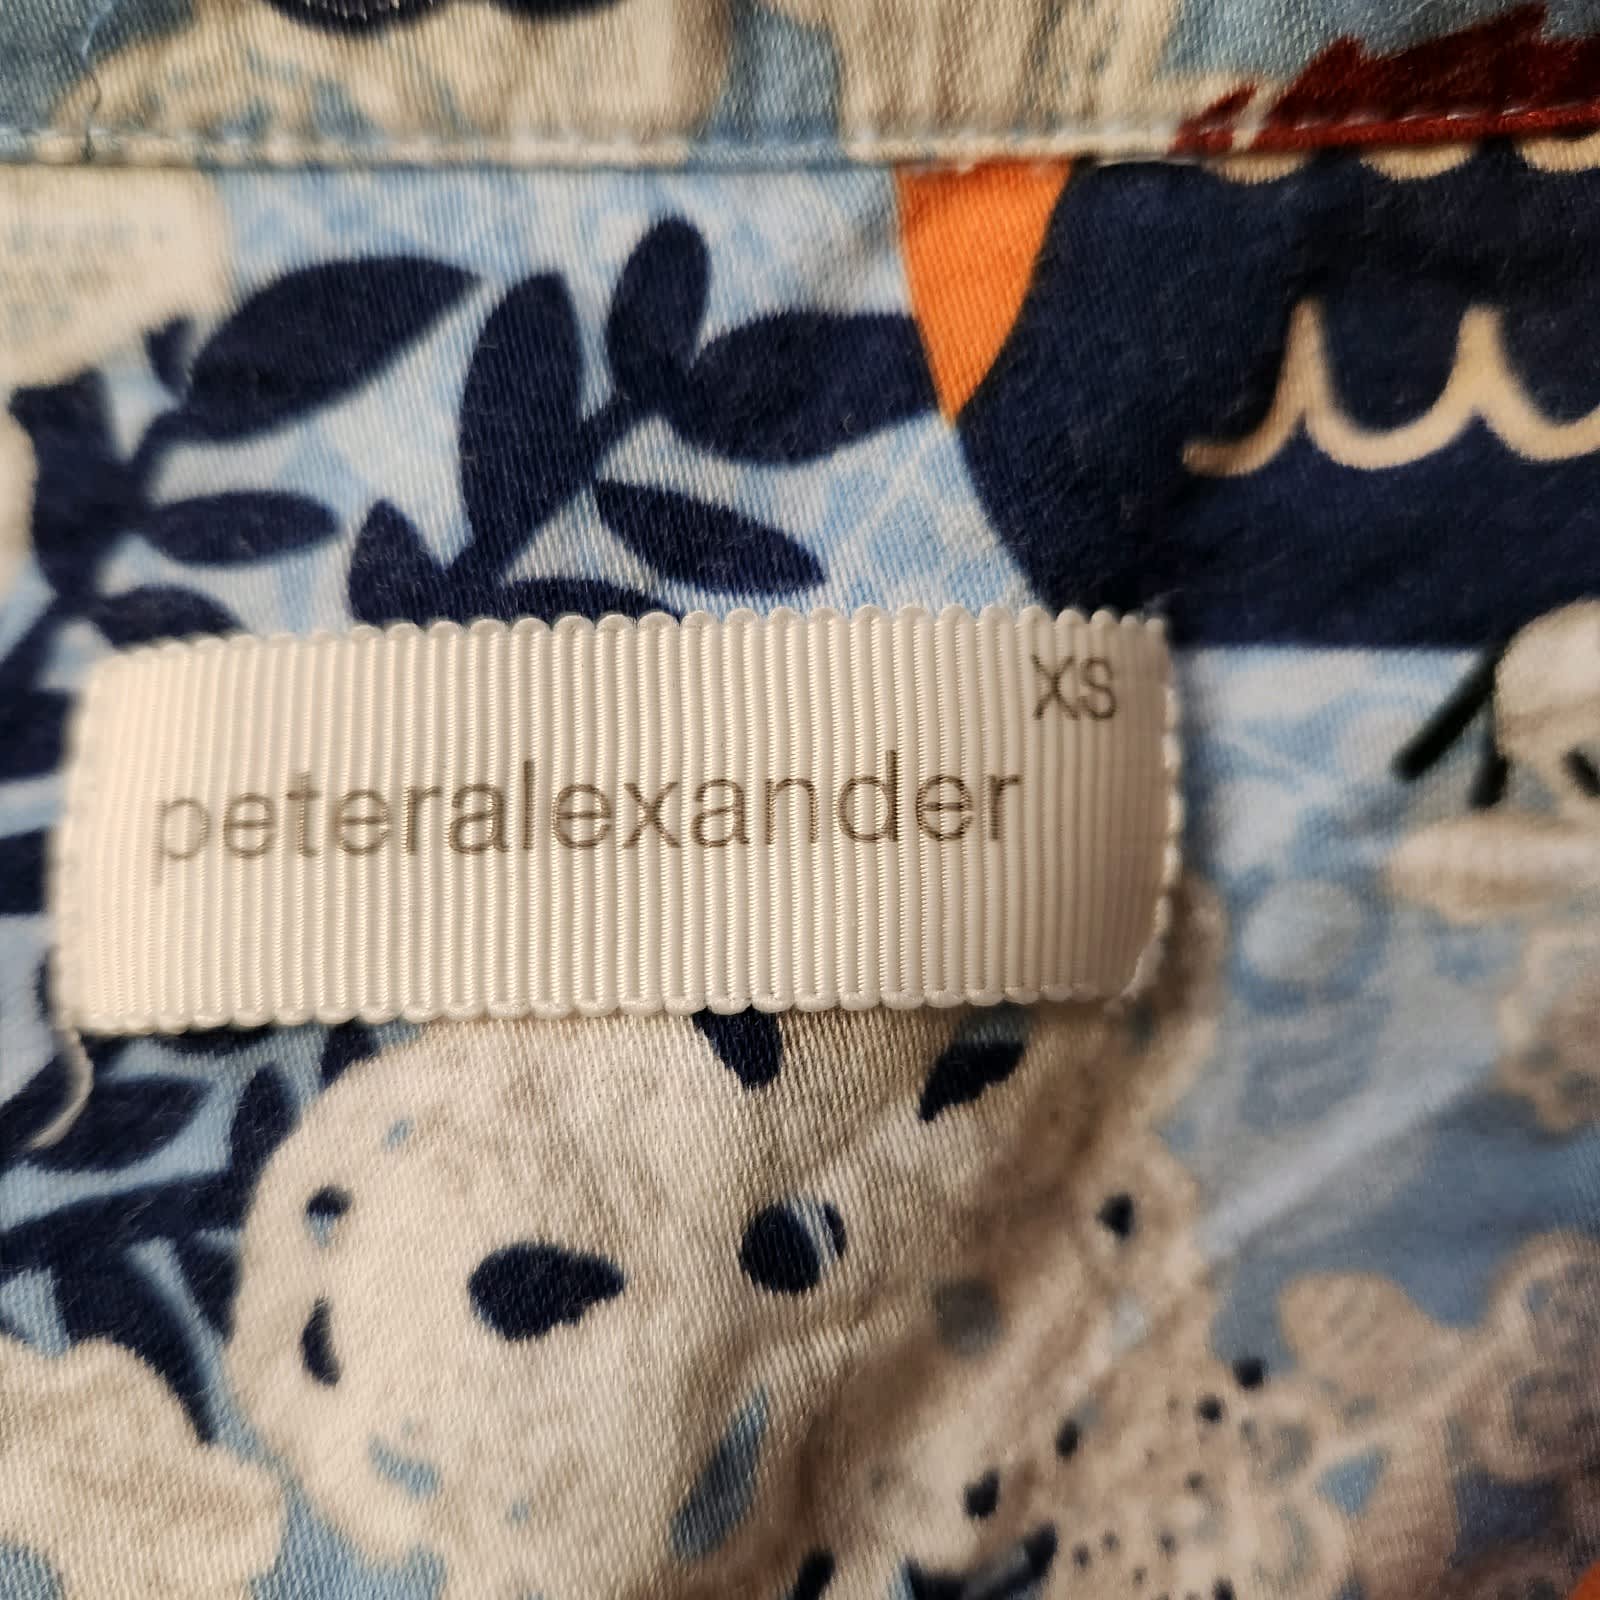 Peter Alexander summer PJ's size small $20